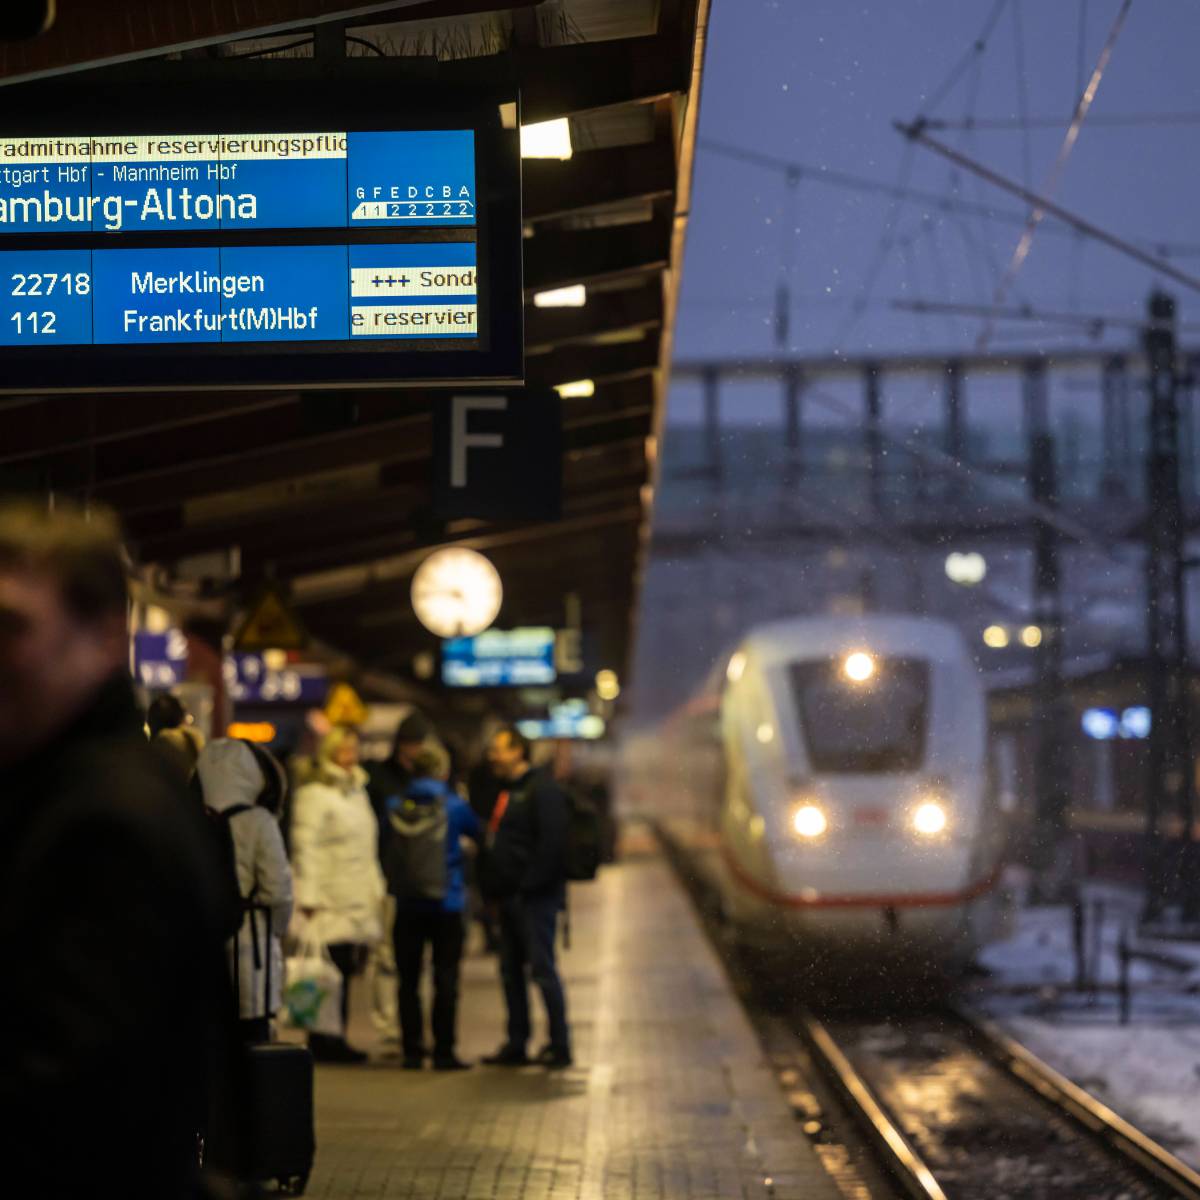 Deutsche Bahn, Flixtrain und Co.: Nach schweren Unglücken an Bahnhöfen – Polizei mit dringender Warnung